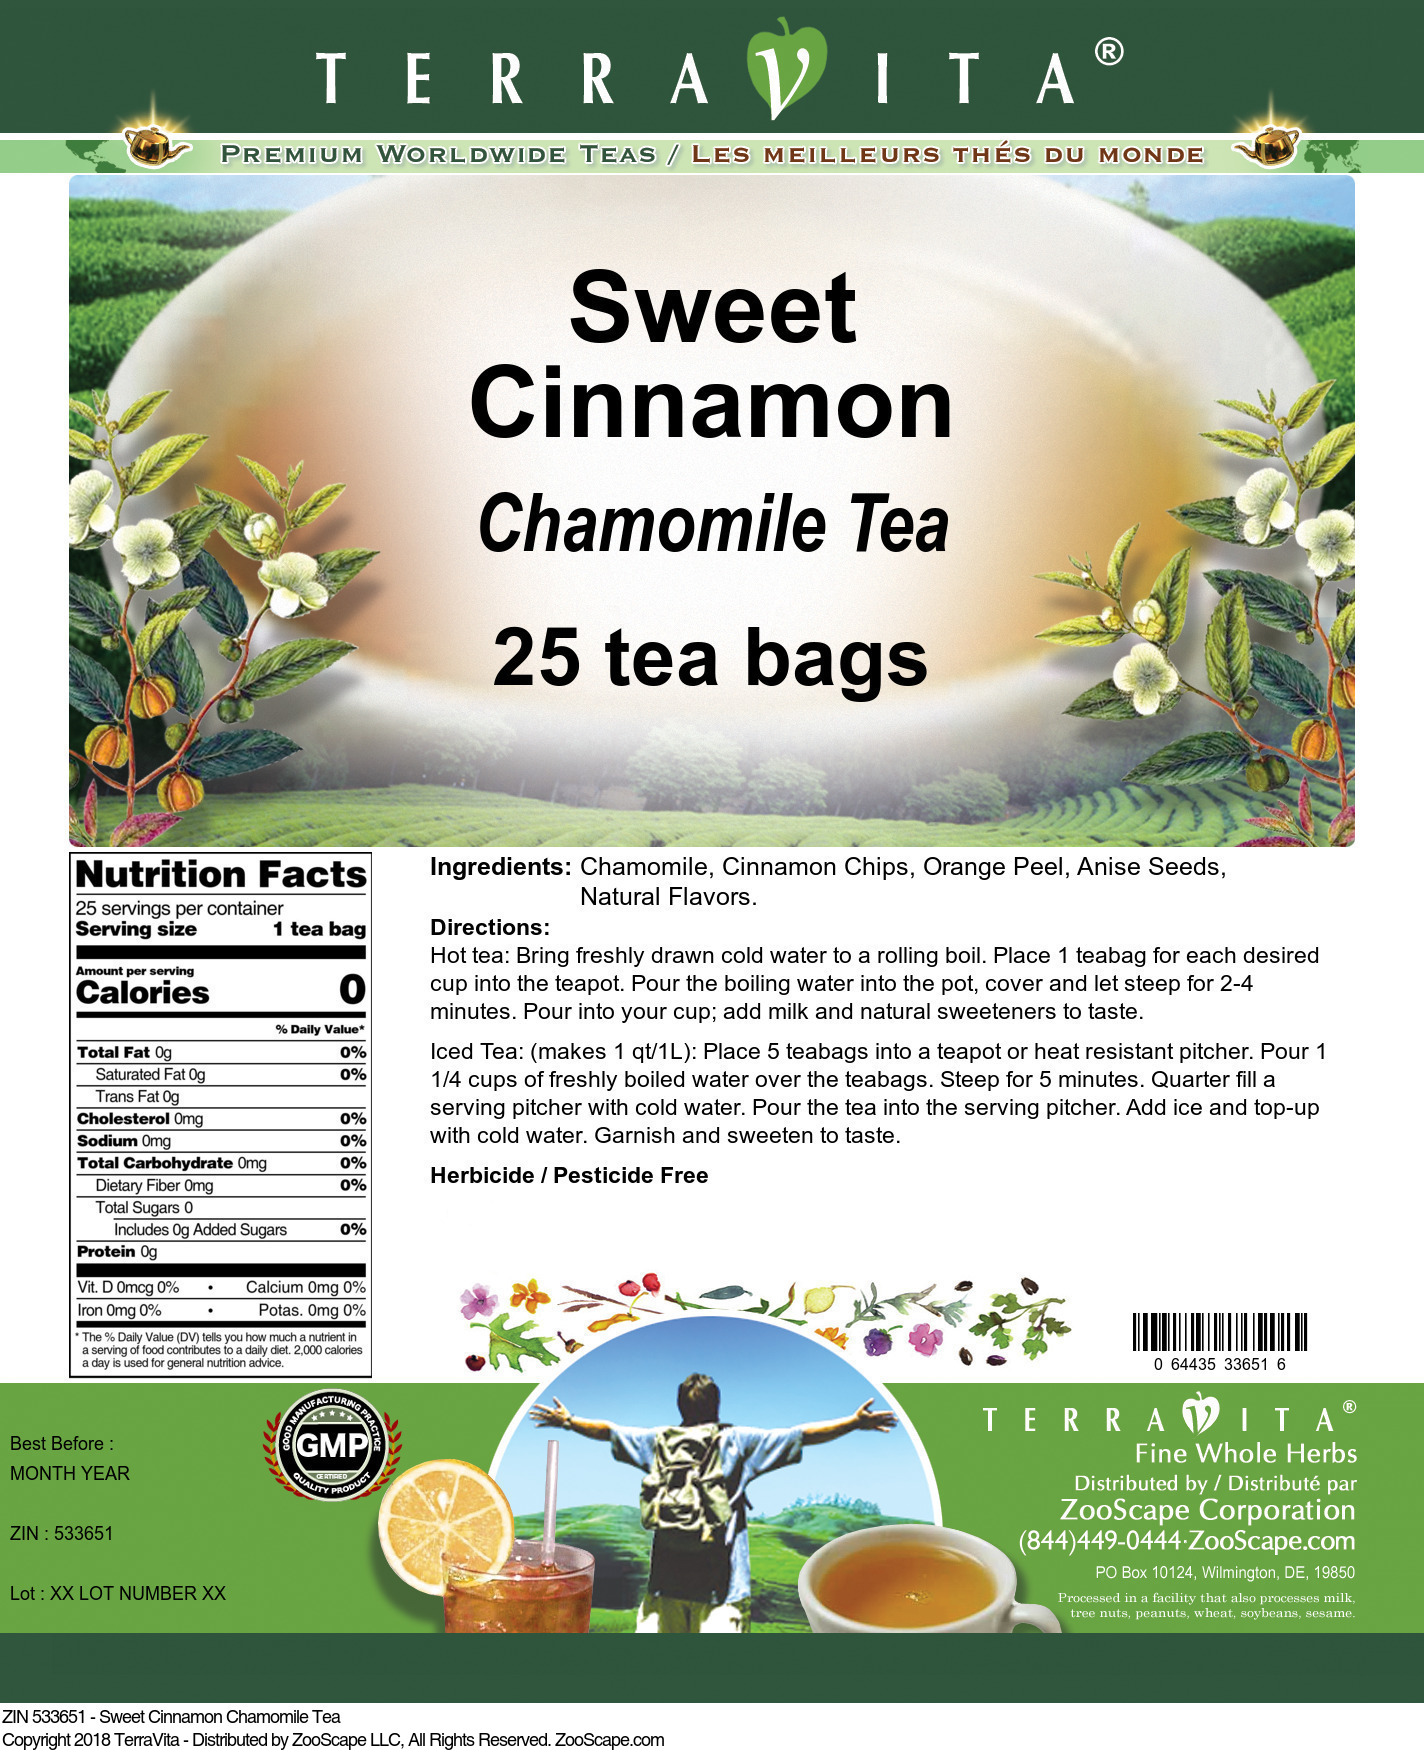 Sweet Cinnamon Chamomile Tea - Label